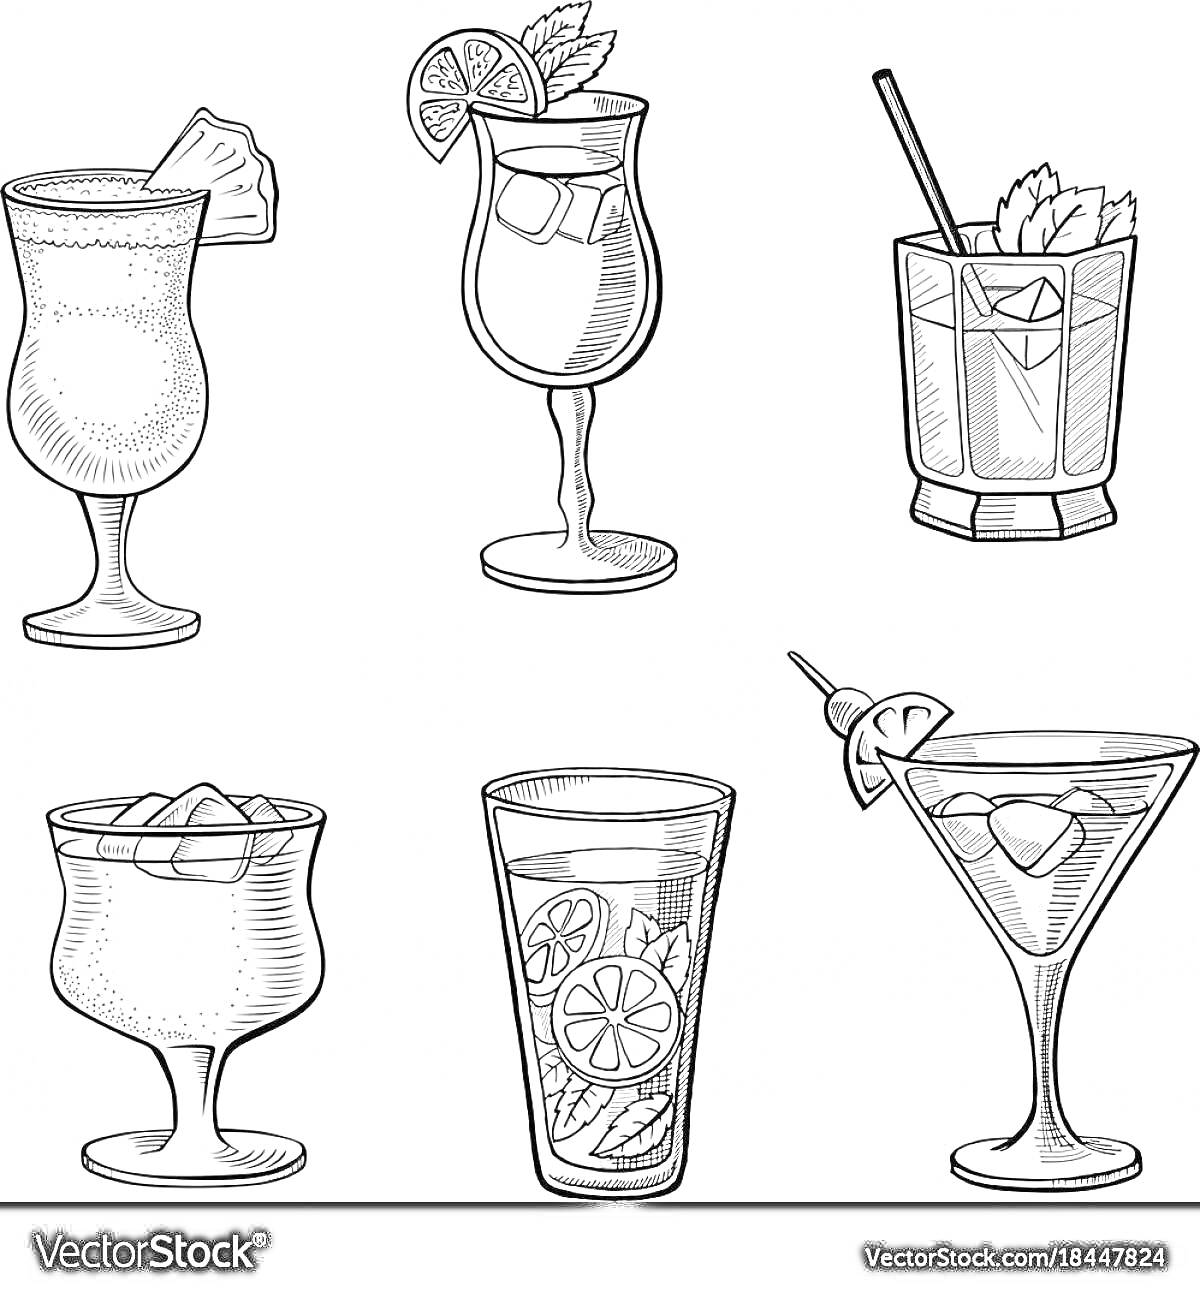 Раскраска Шесть коктейлей в различных бокалах с различными украшениями, среди которых кусочек ананаса, спираль лимона, трубочка, мята, кусочки льда, ломтик цитруса и вишенка на шпажке.